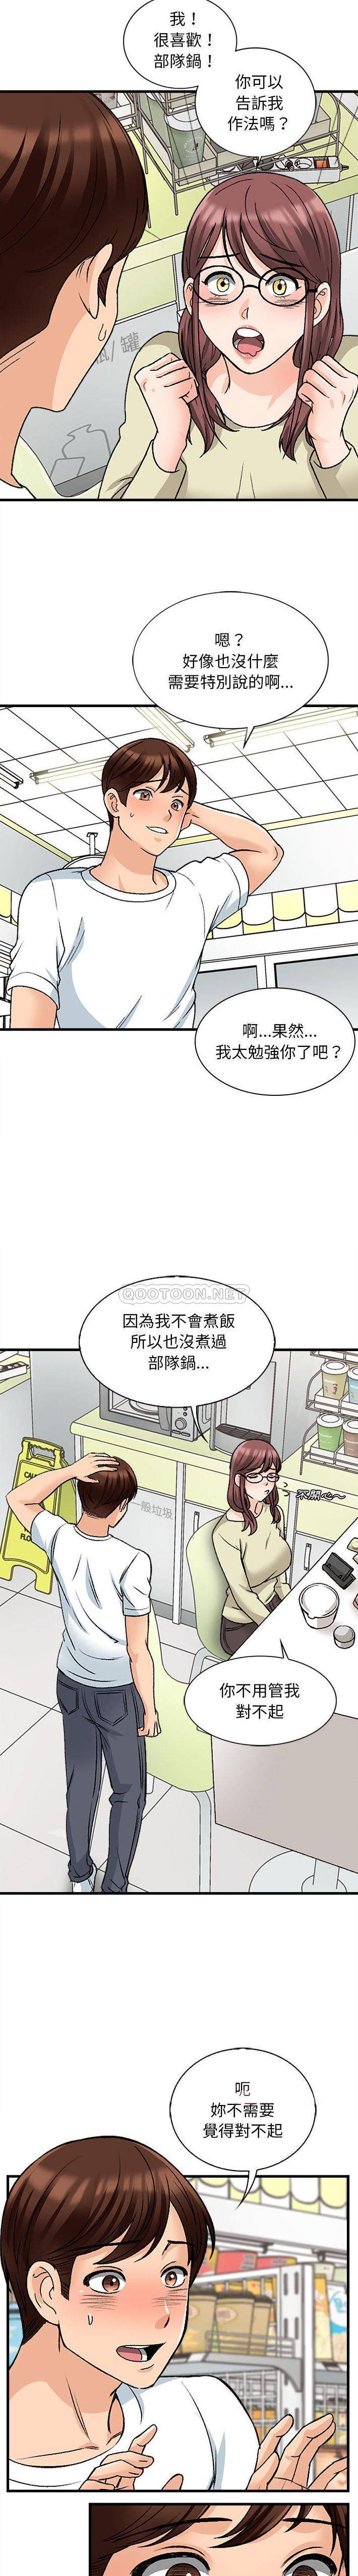 韩国污漫画 幸福公寓 第9话 14